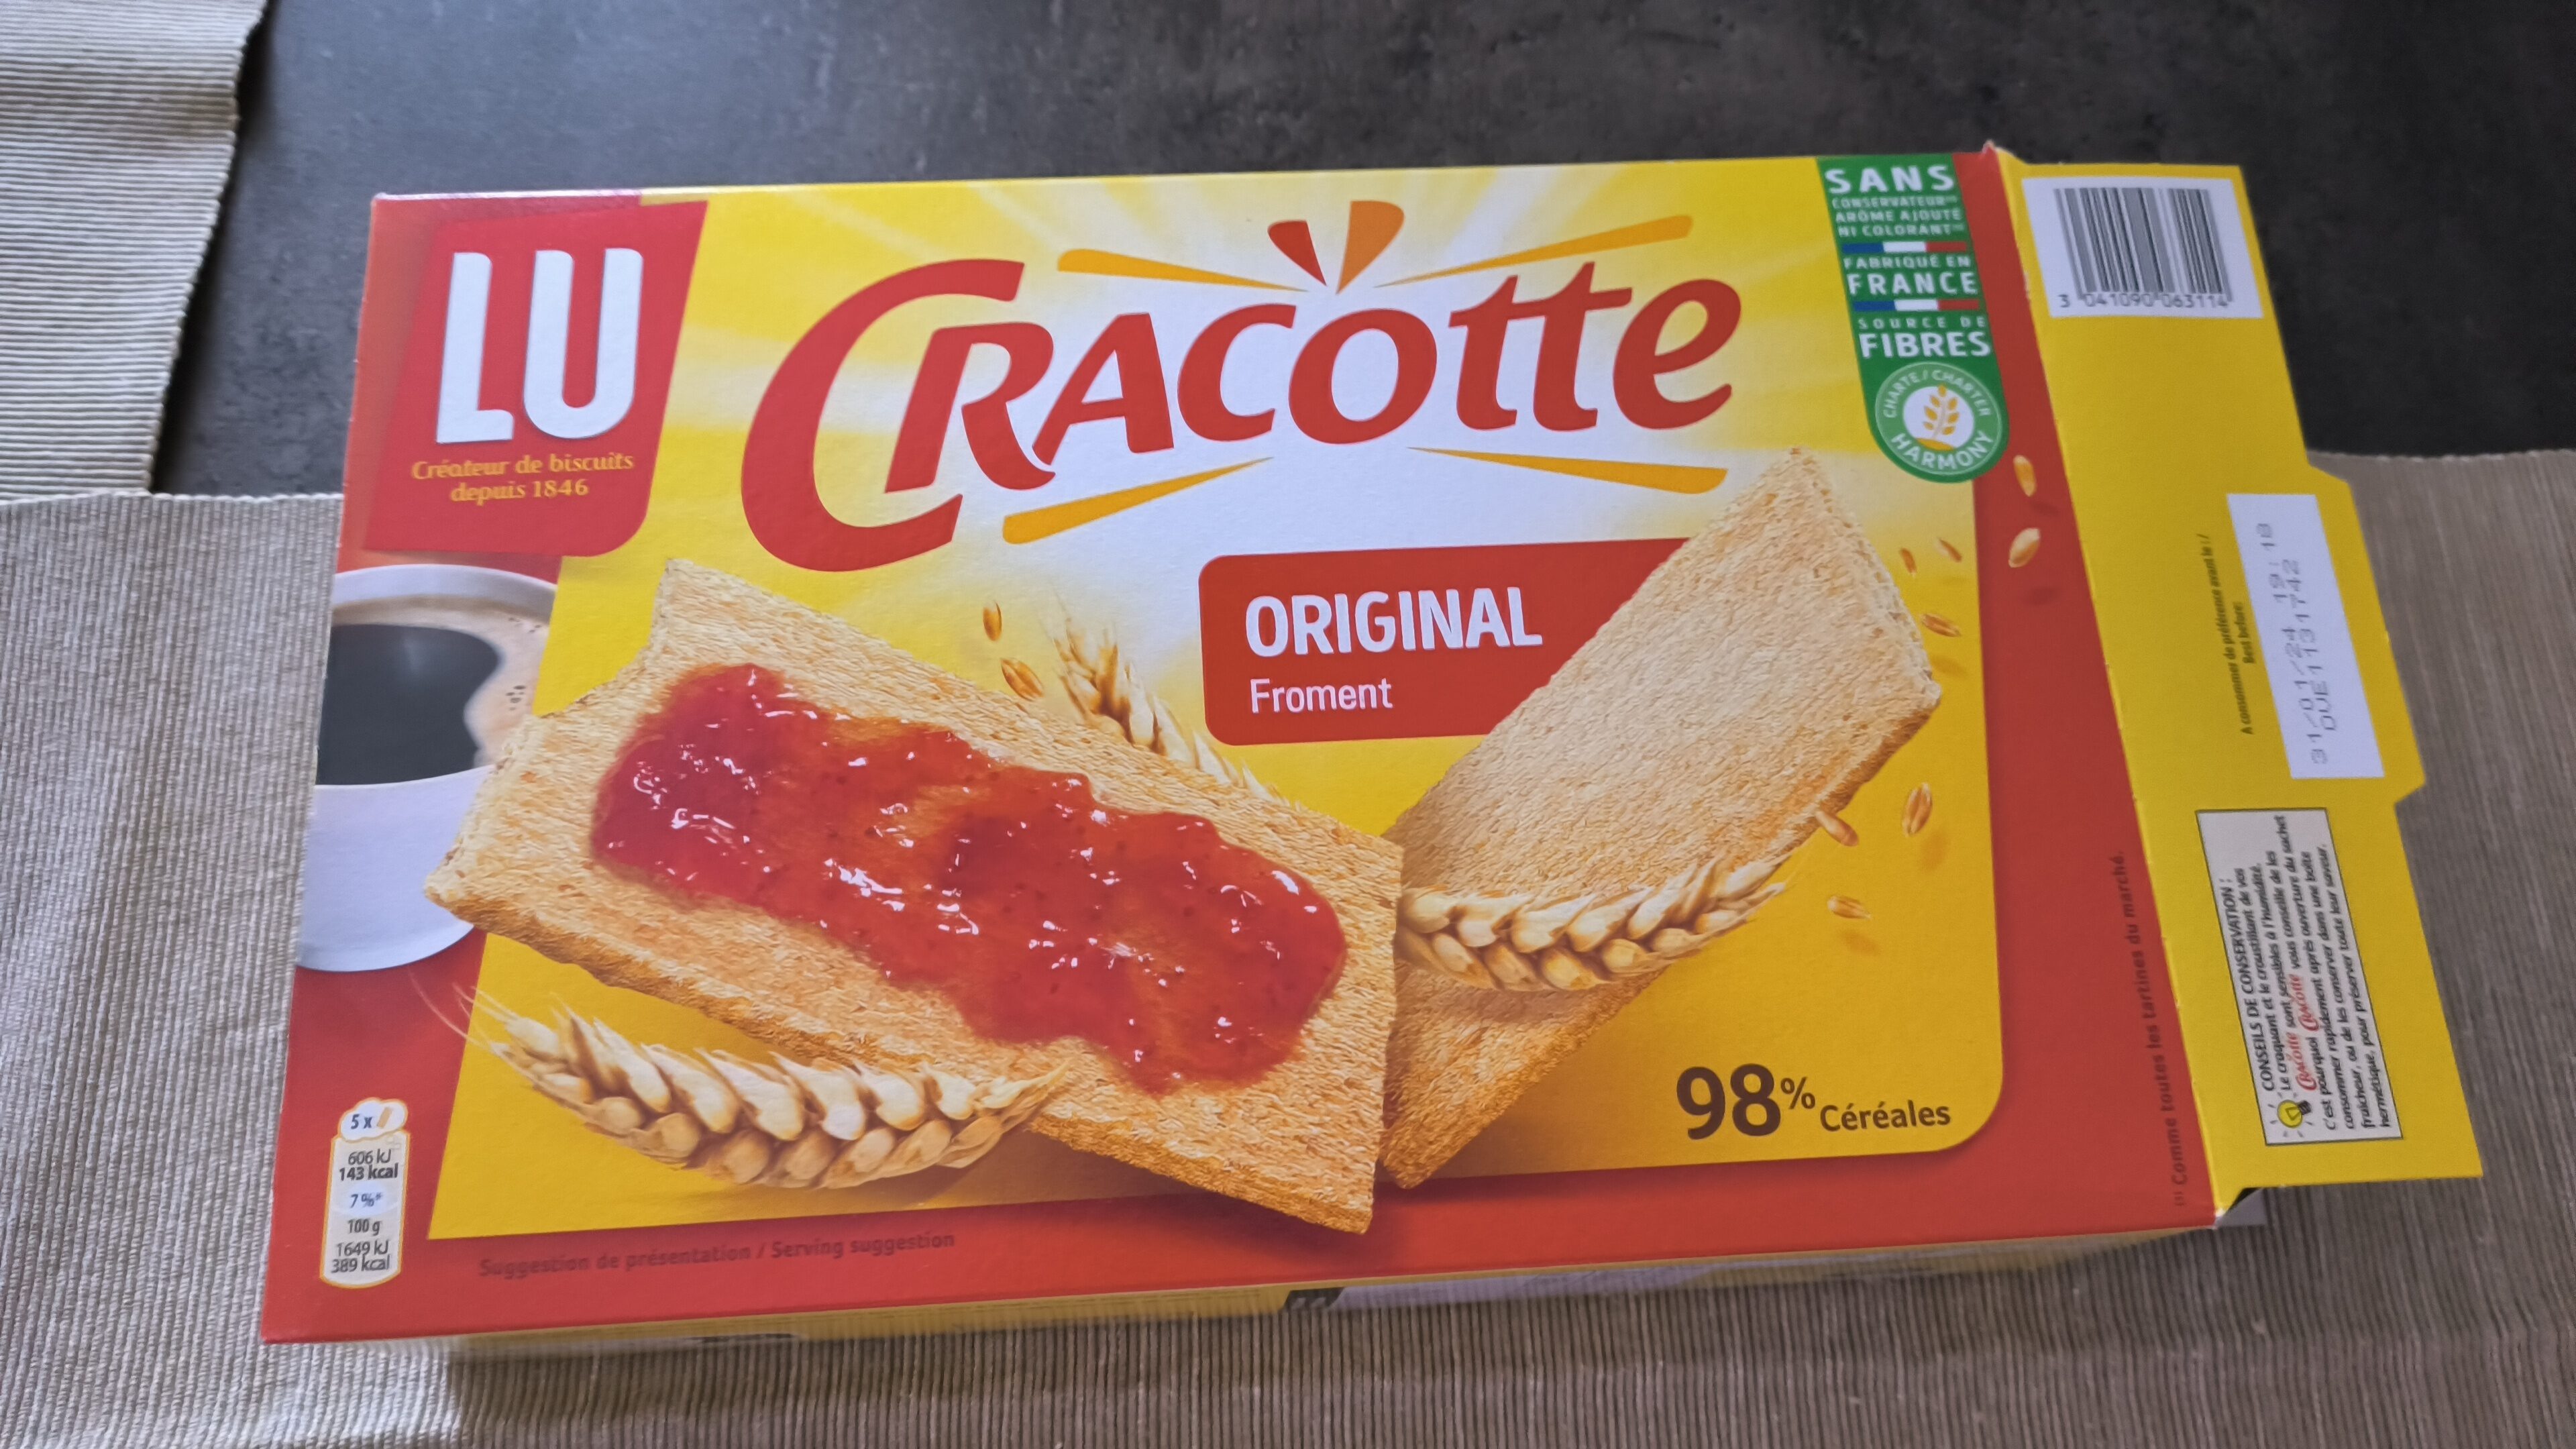 Lu - Cracotte Original Wheat Slices, 250g (8.8oz) - Product - en